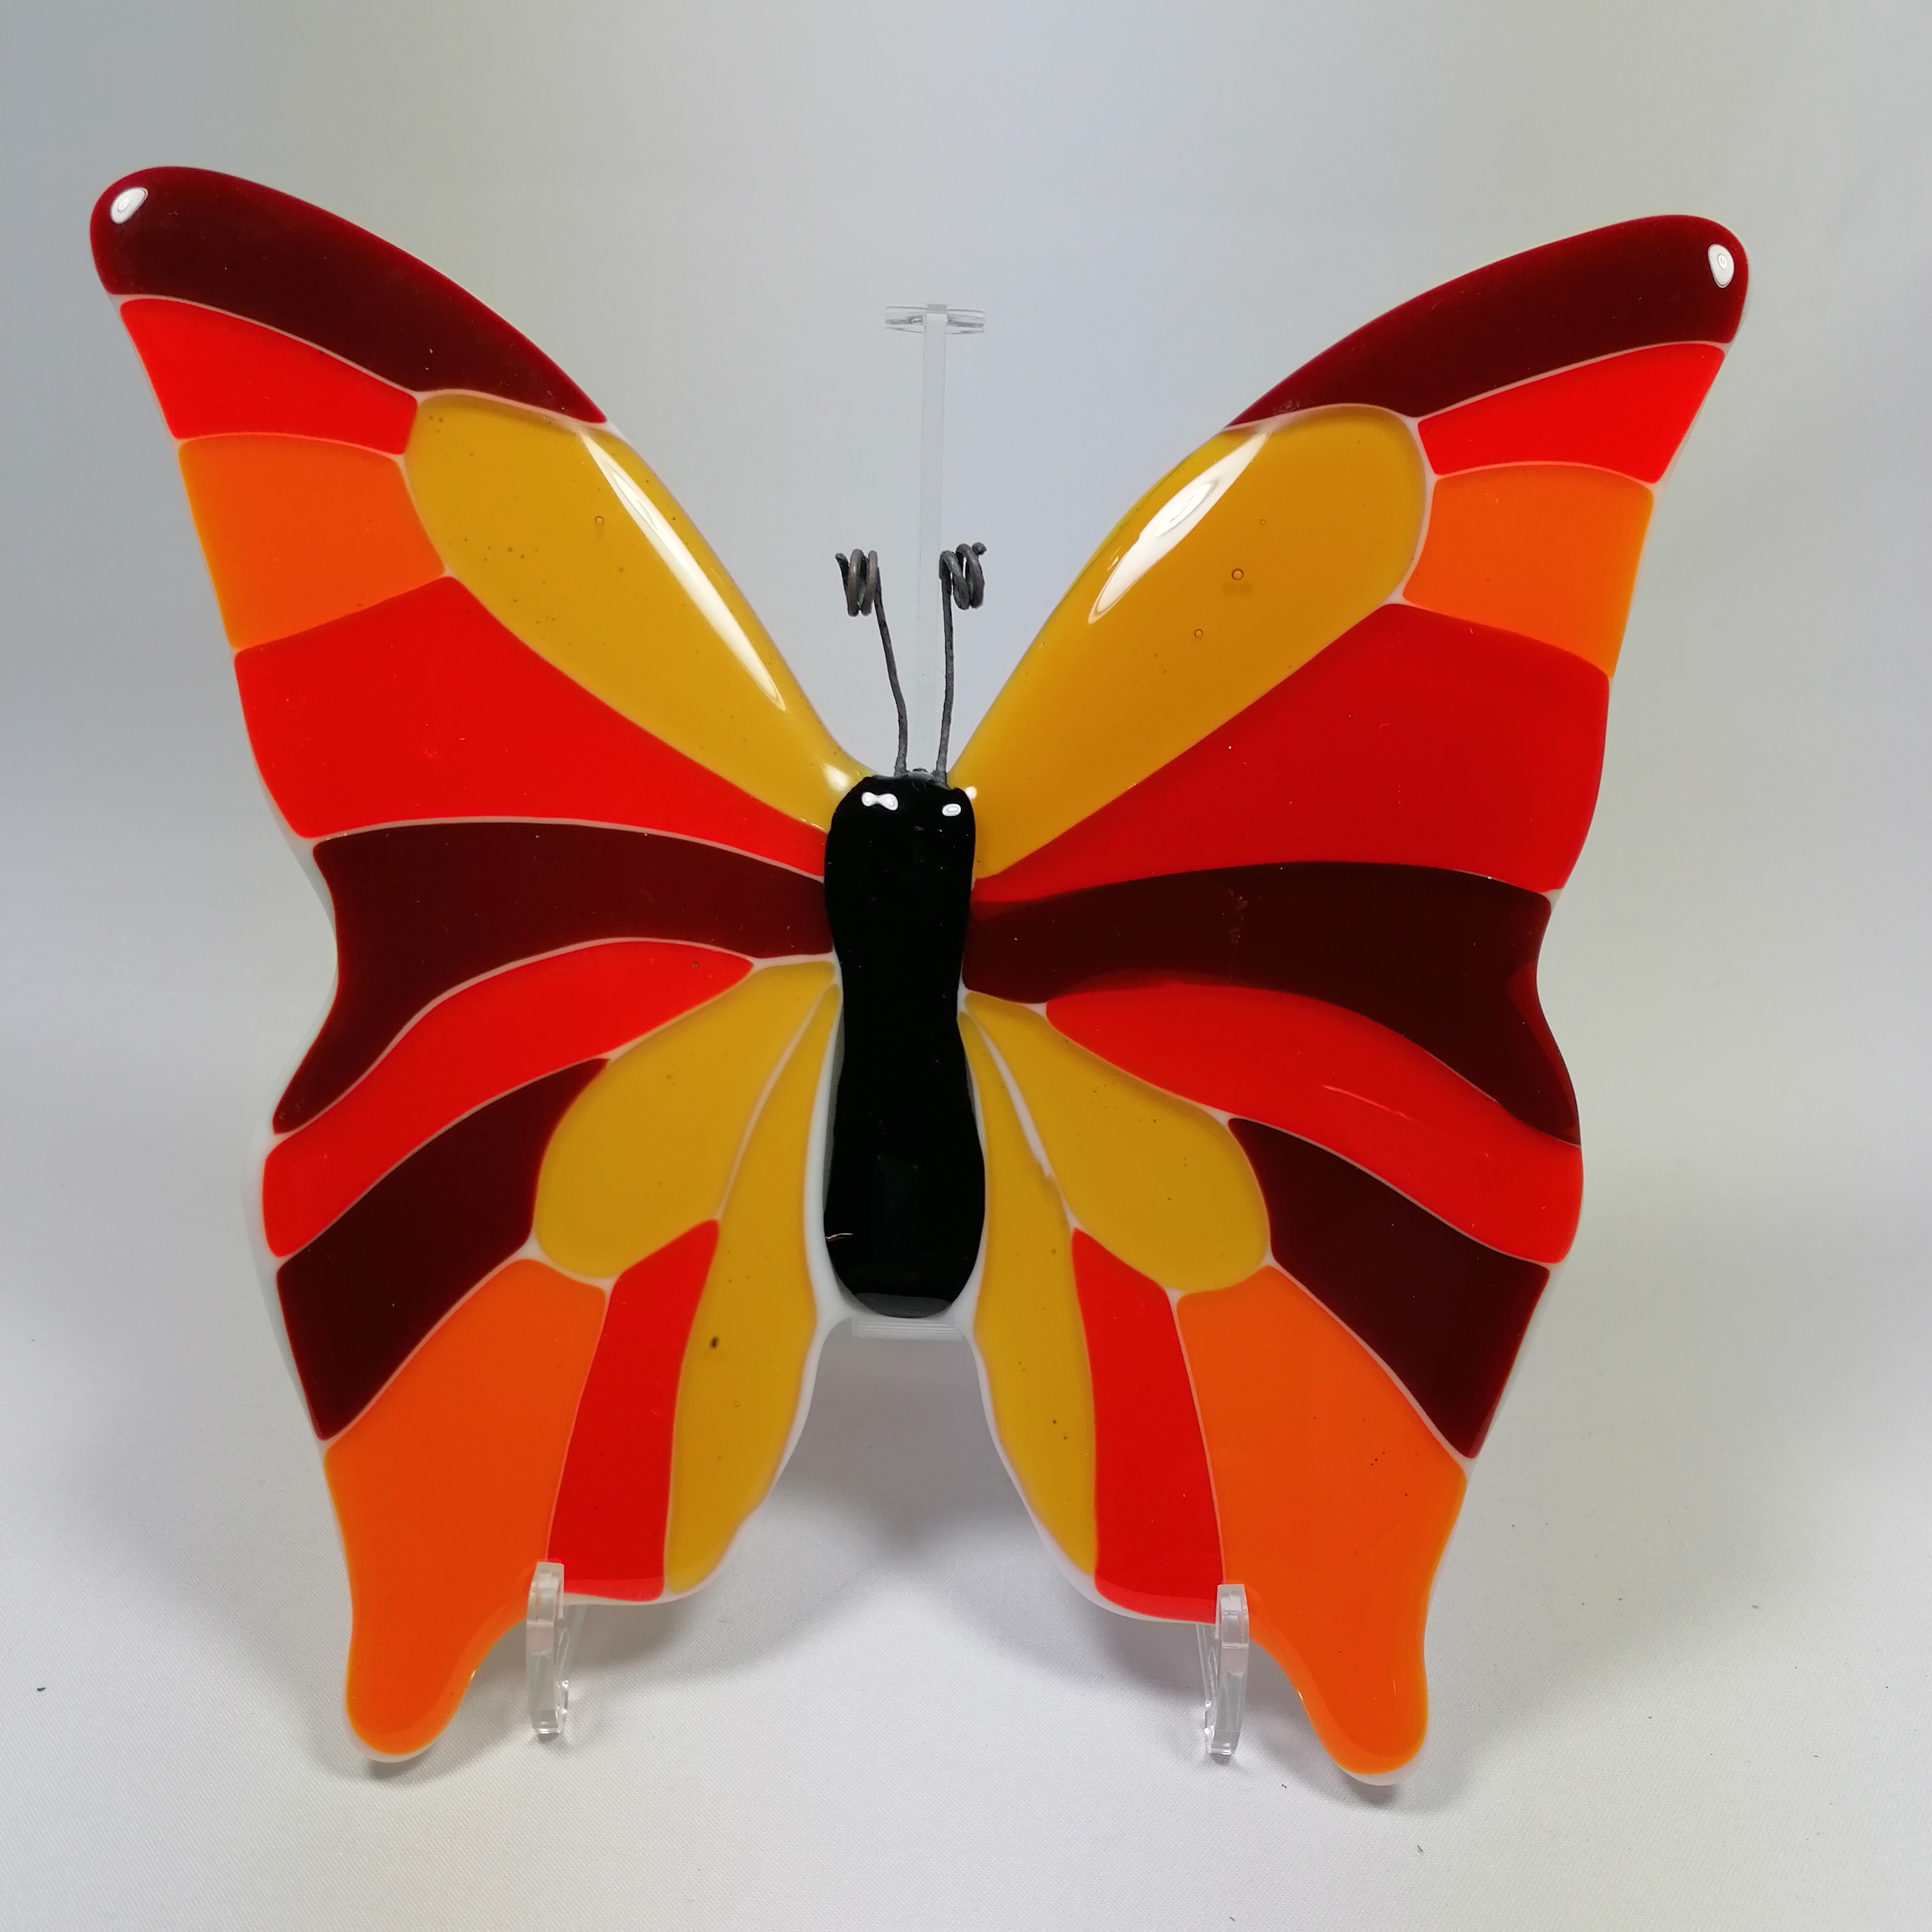 leraar Port leerboek Glazen vlinder oranje rood okergeel klein